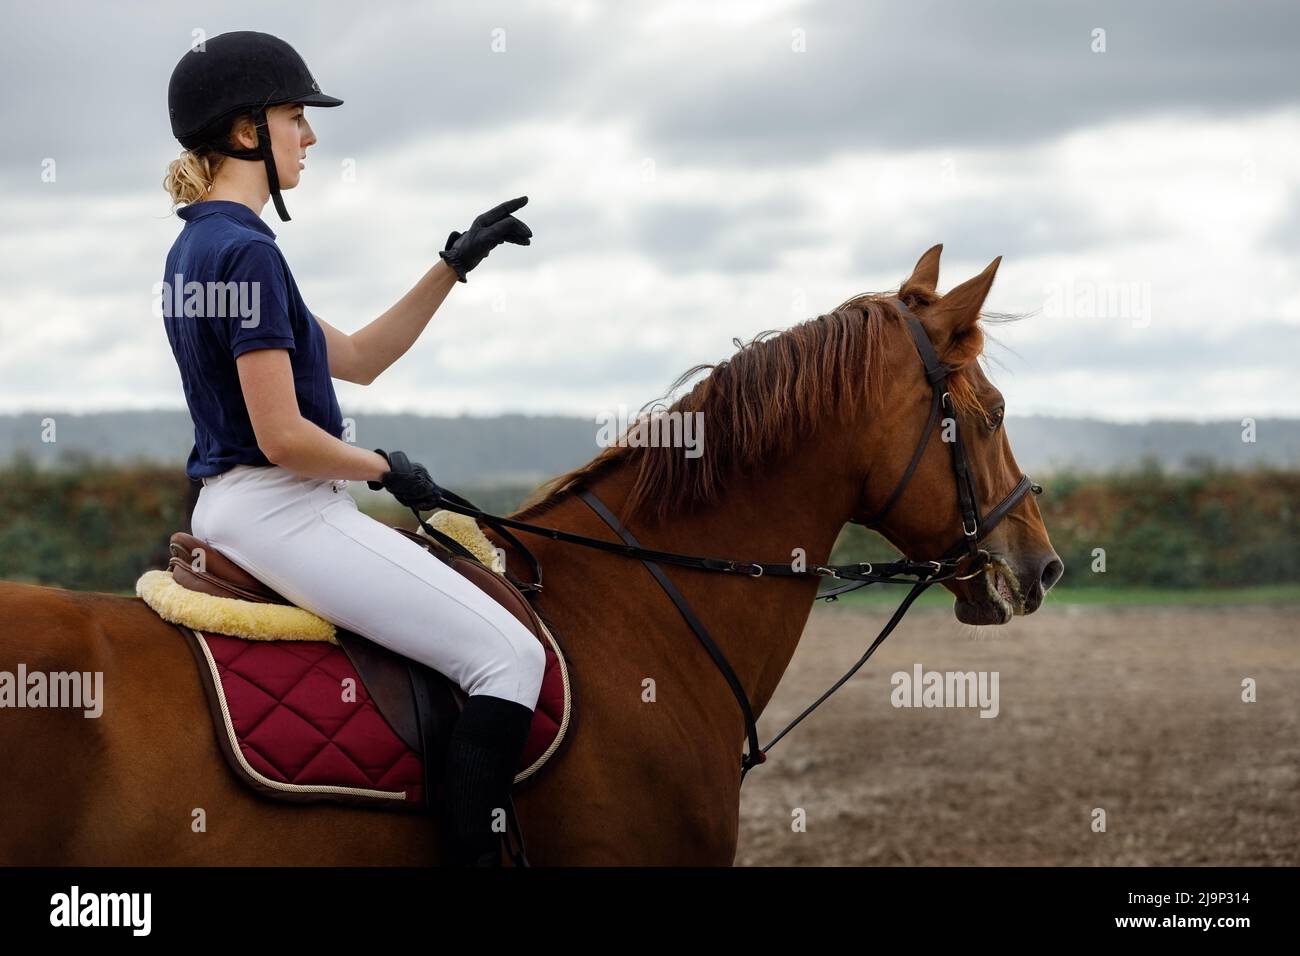 La niña está aprendiendo a montar a caballo en el campo de equitación. La mujer mira a la distancia y planea la ruta de montar con su mano. Foto de stock